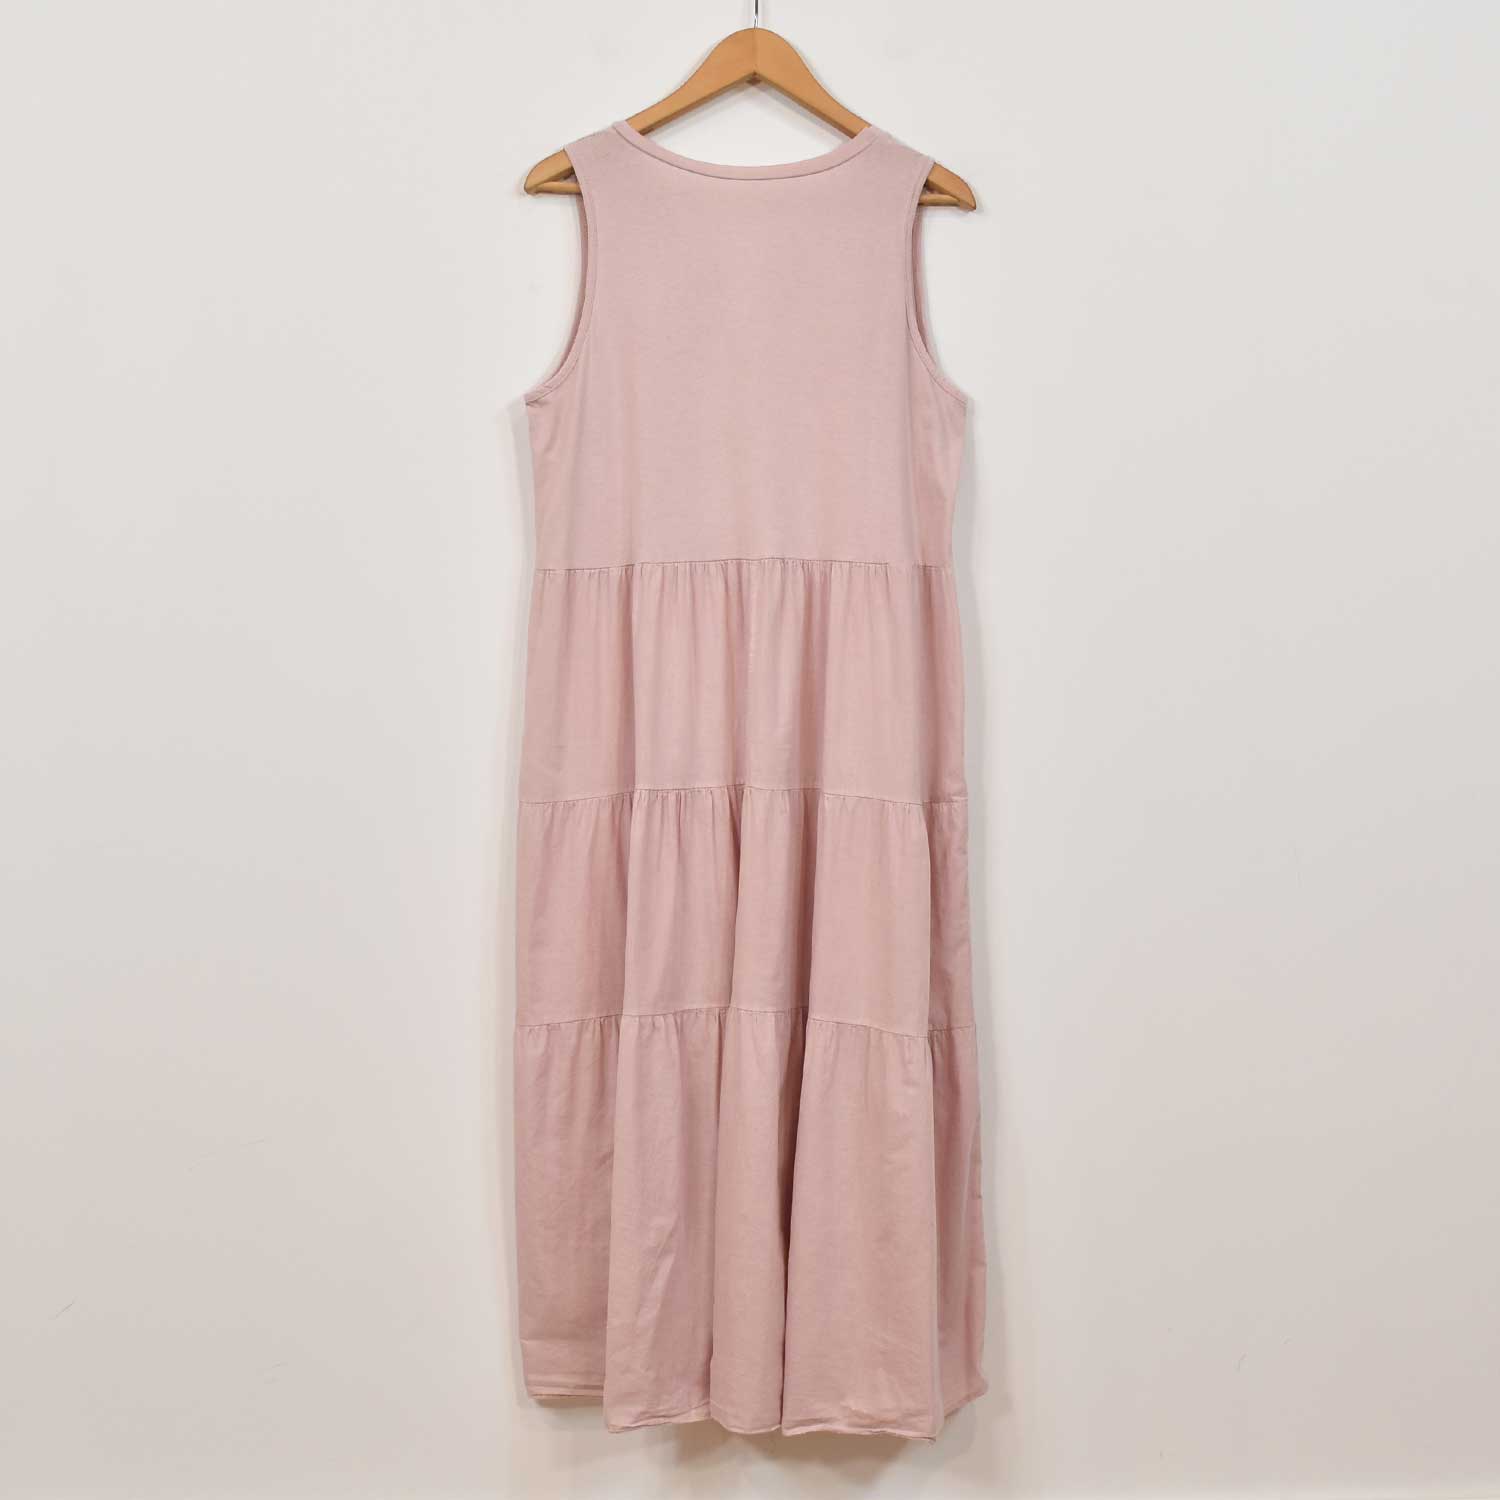 Pink stitching dress
